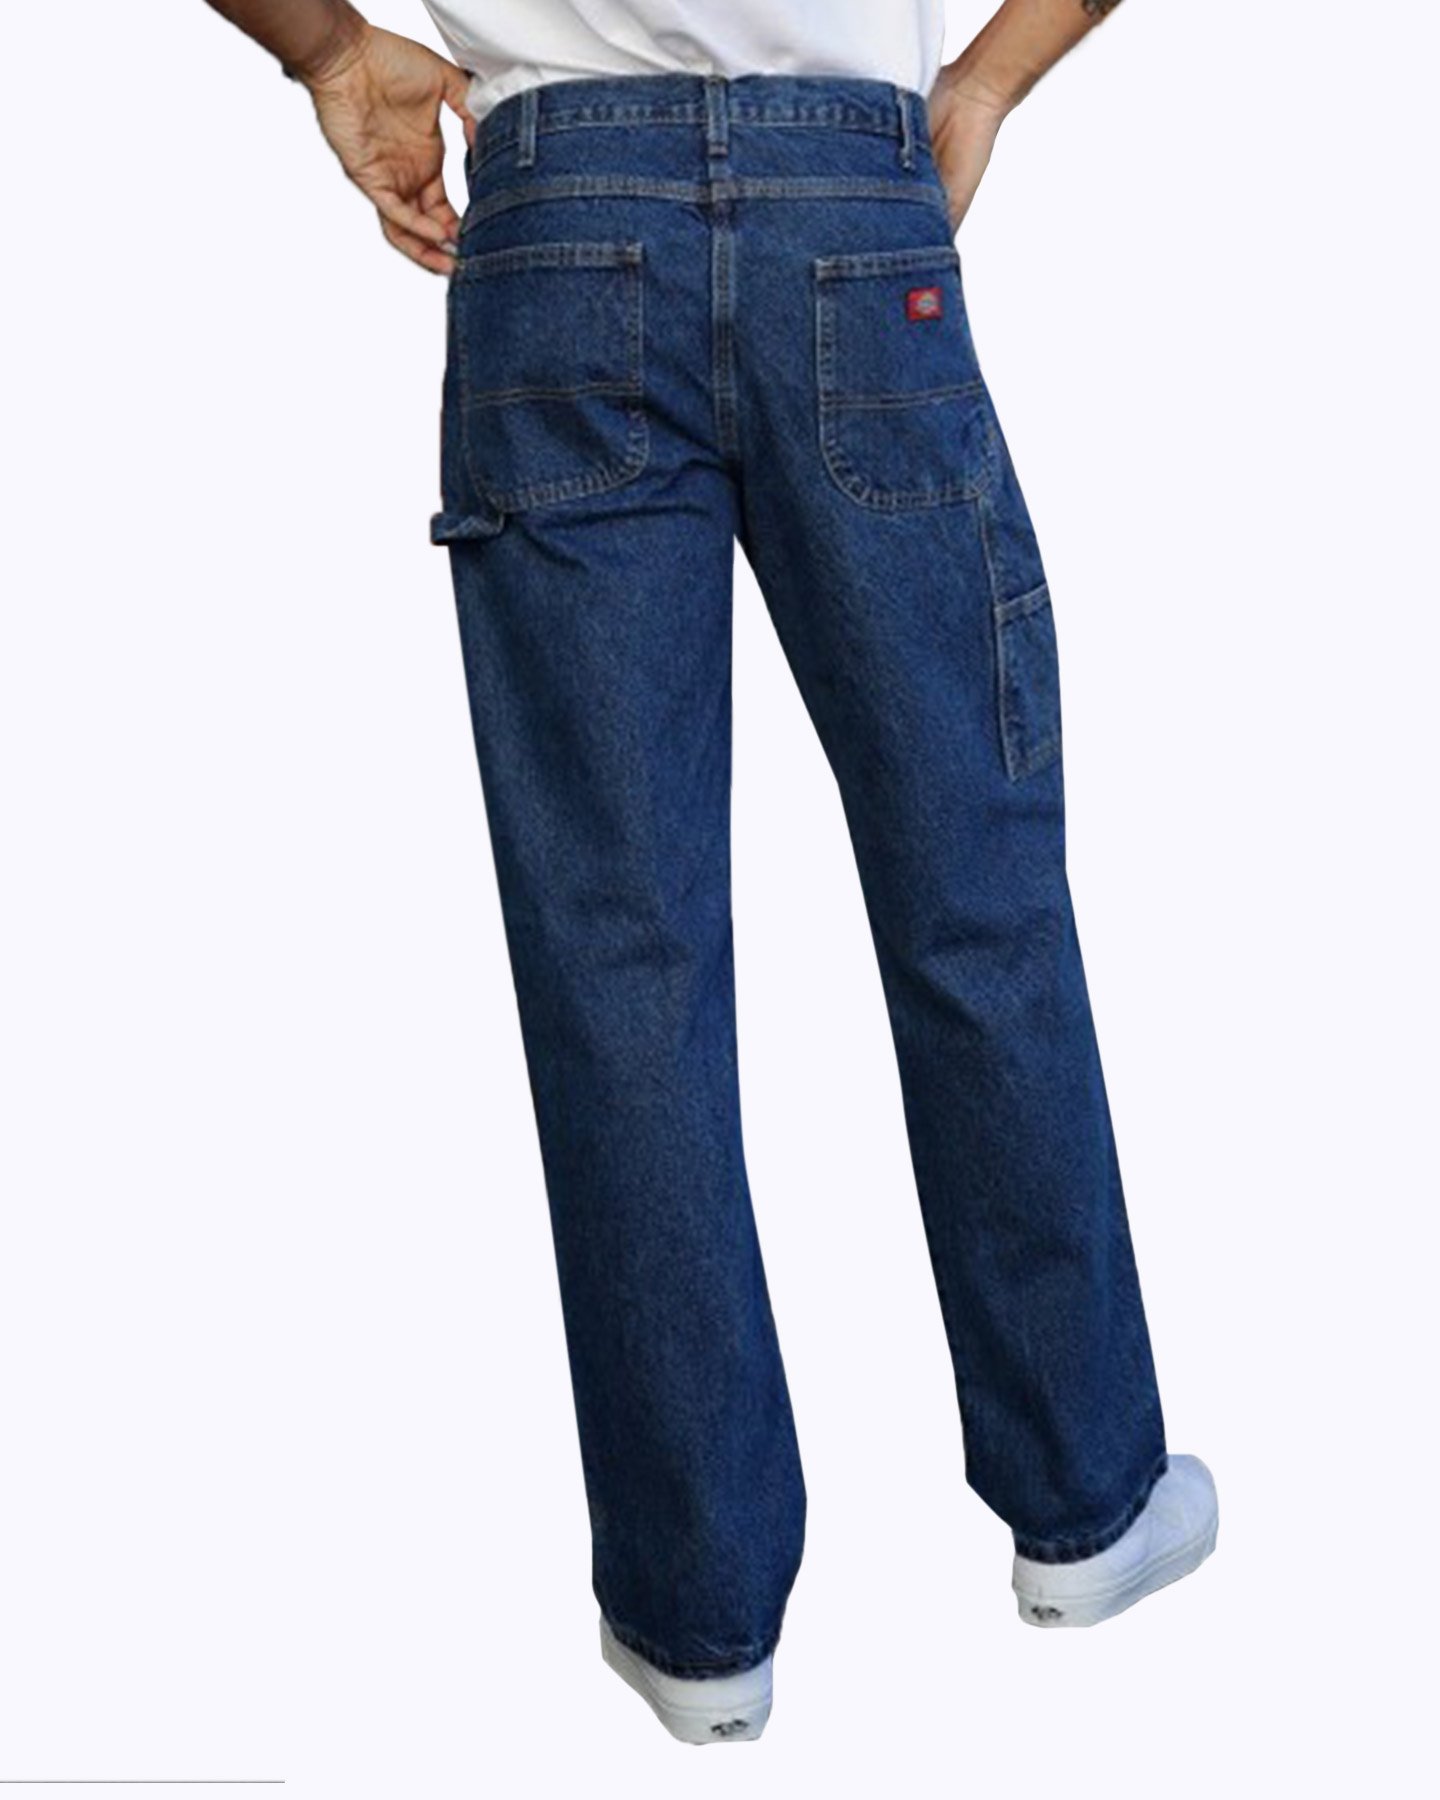 Workrite Dickies FR 4881 Jeans - 14 oz Amtex 100% Cotton (old p/n